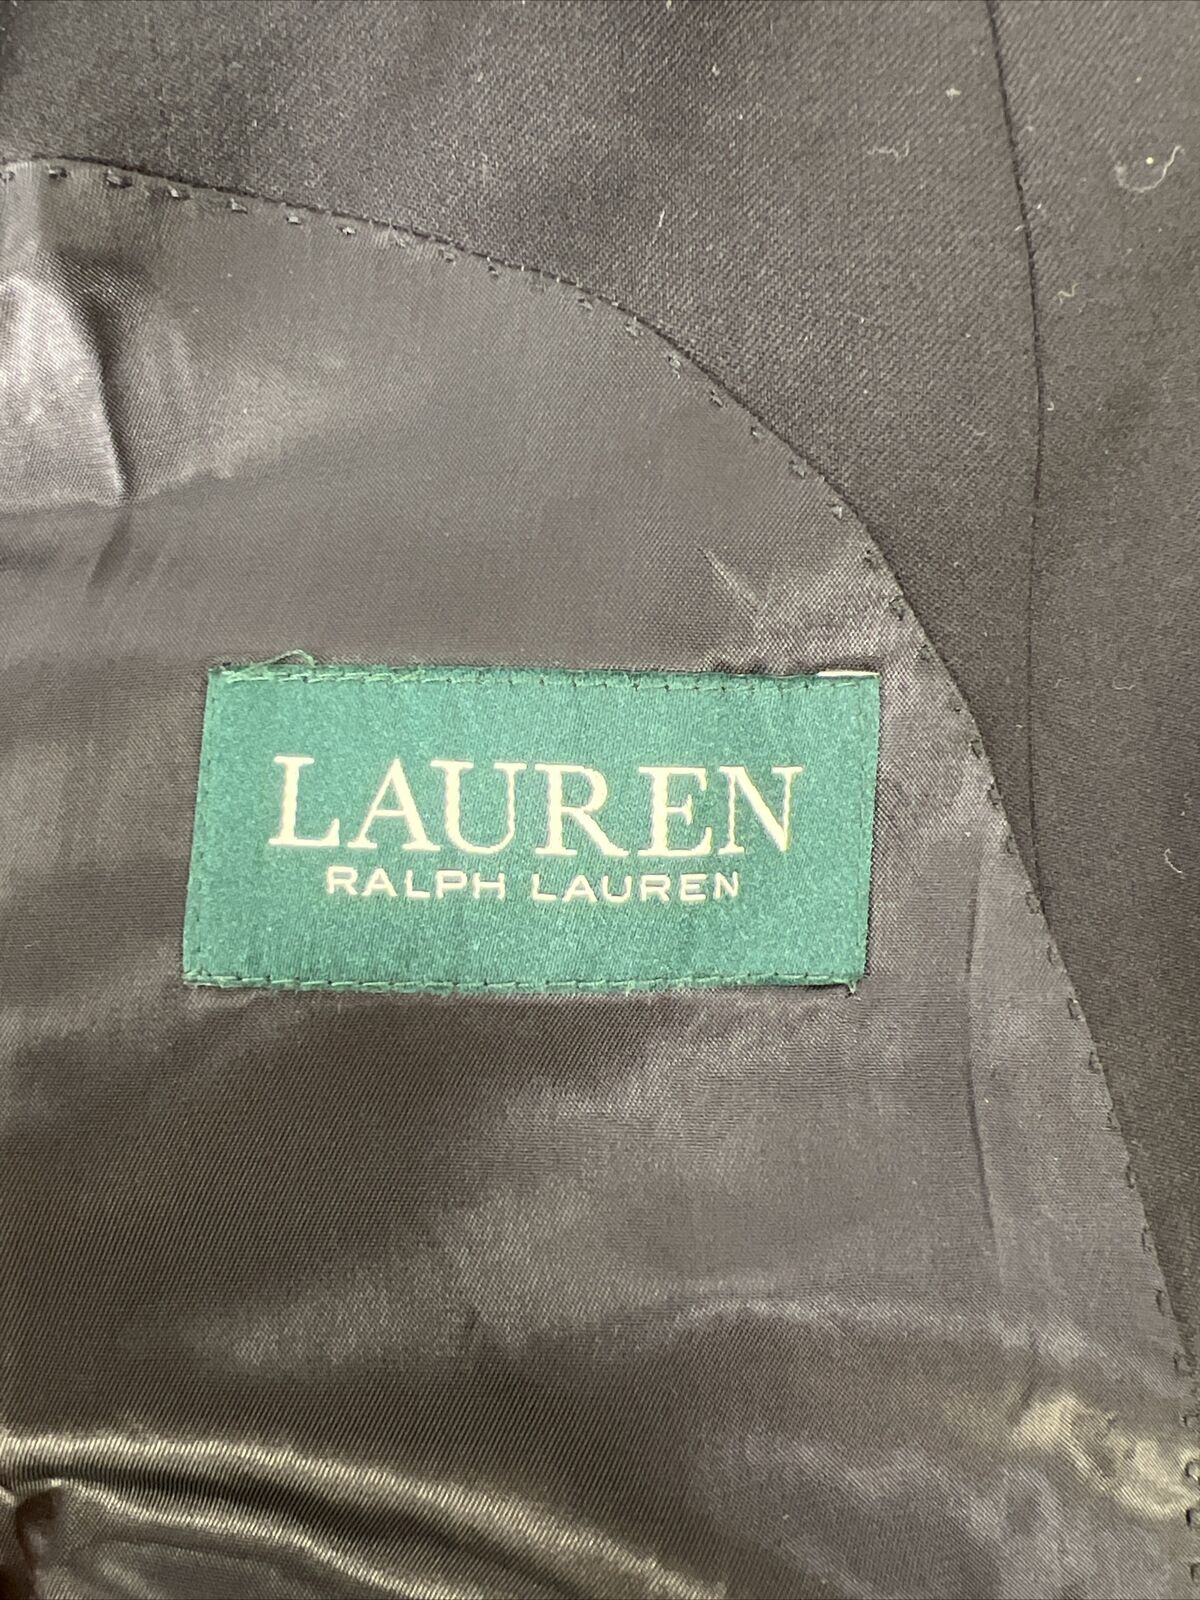 LAUREN Ralph Lauren Men's Black 2-Button Wool Suit Jacket Blazer - 46R